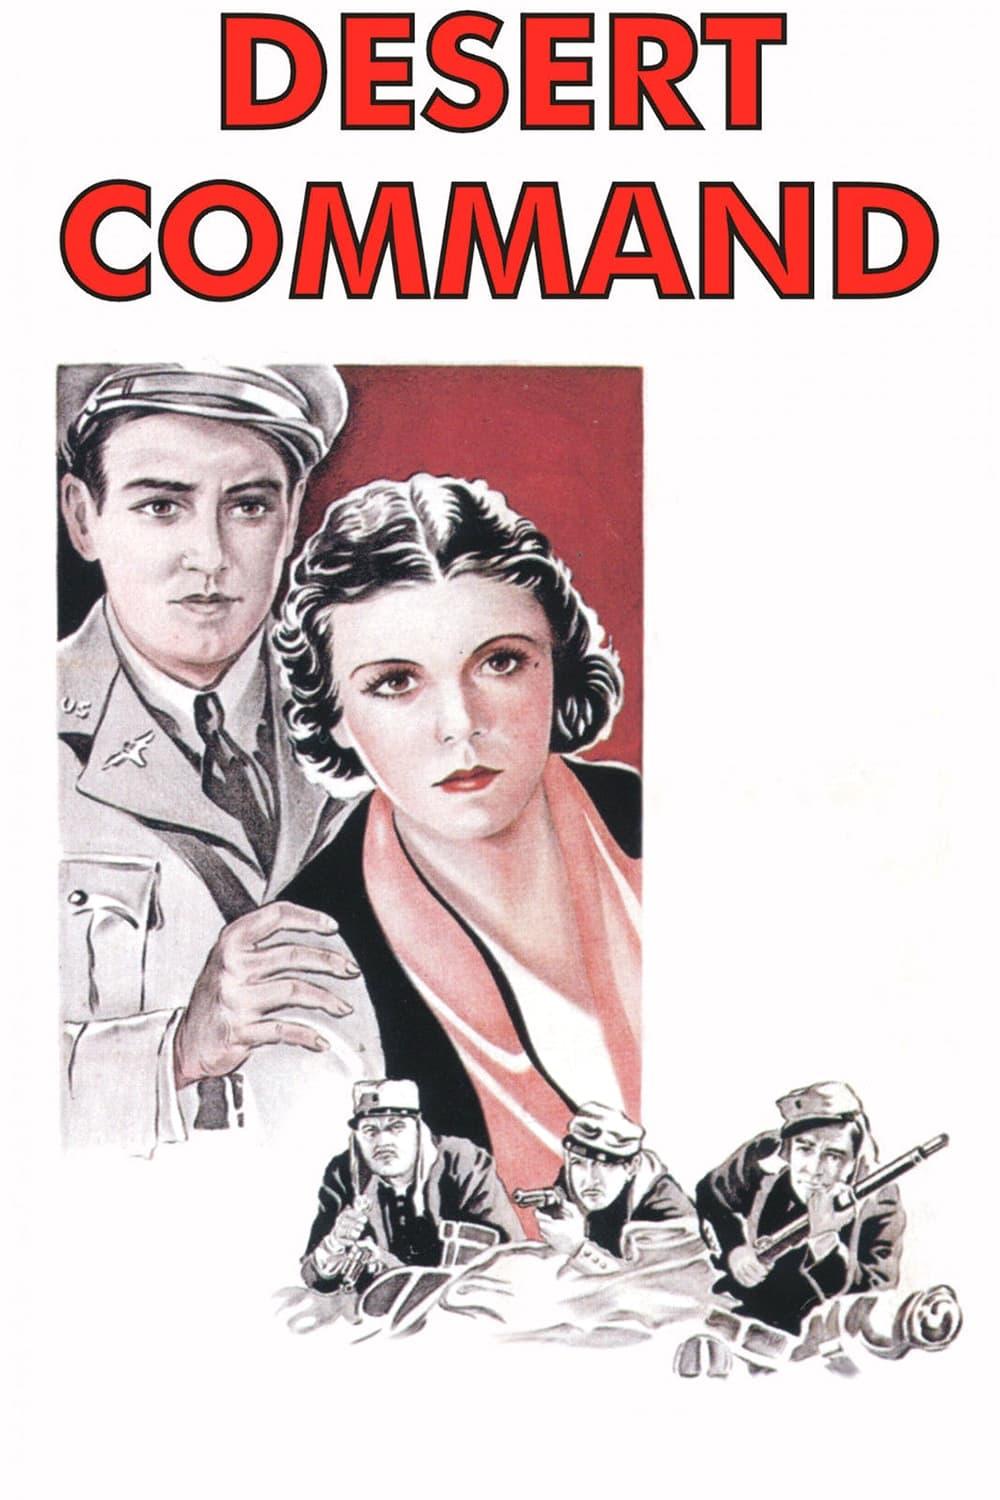 Desert Command poster